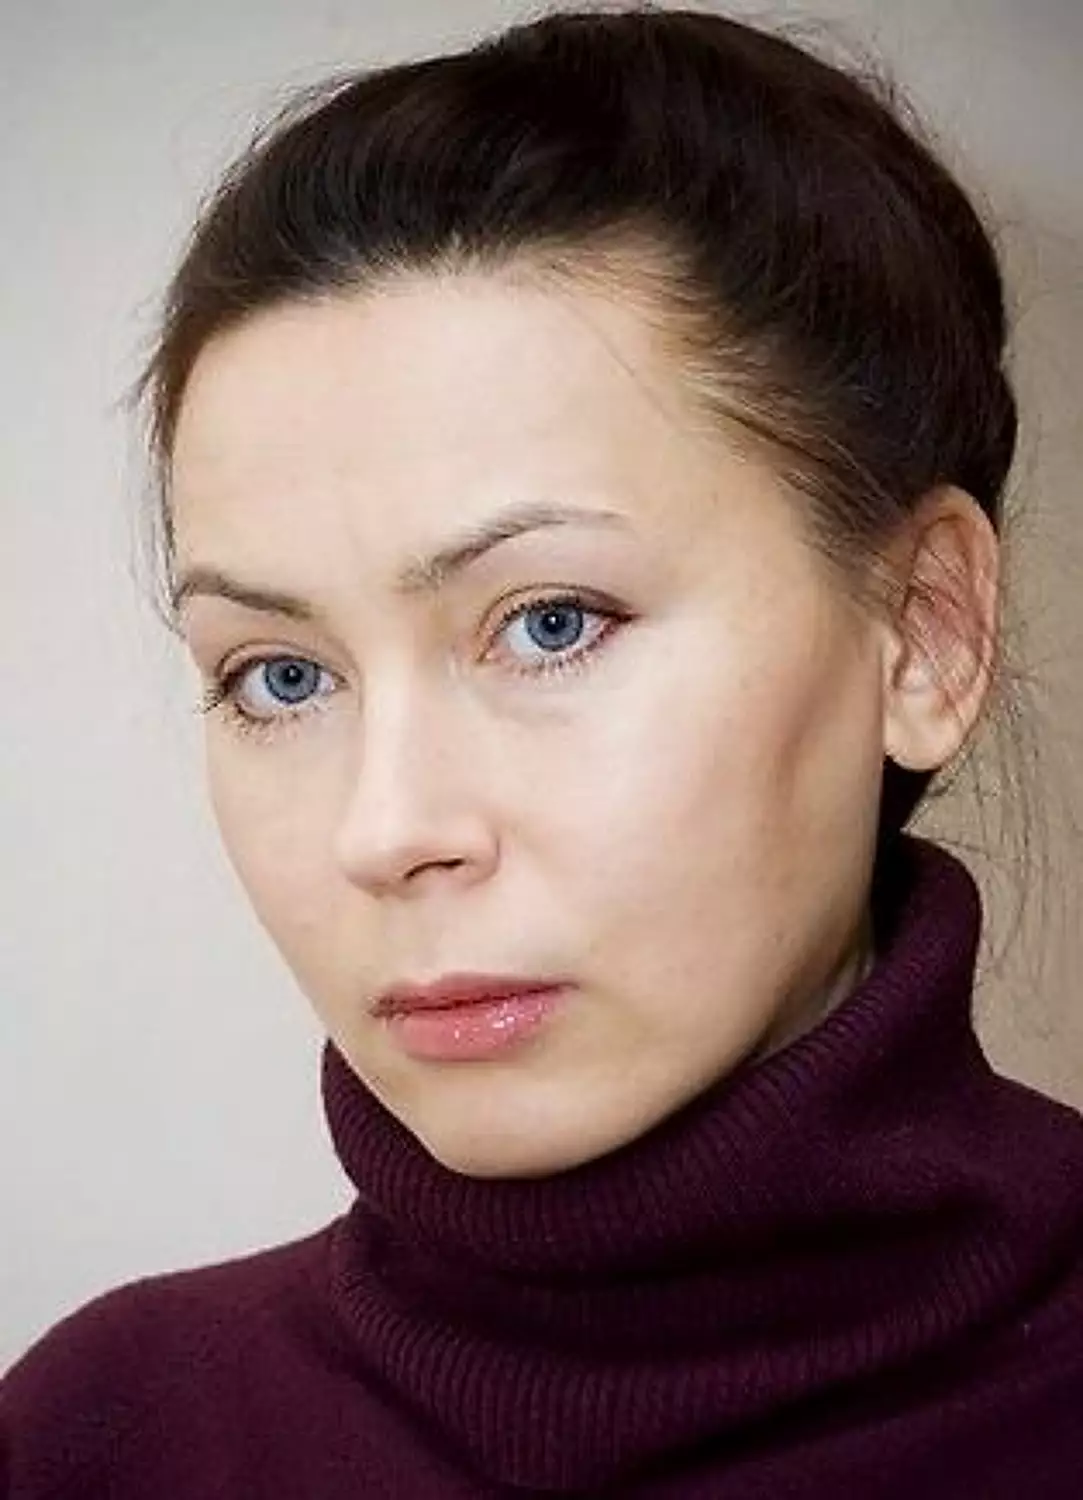  Онищенко ольга актриса личная жизнь муж